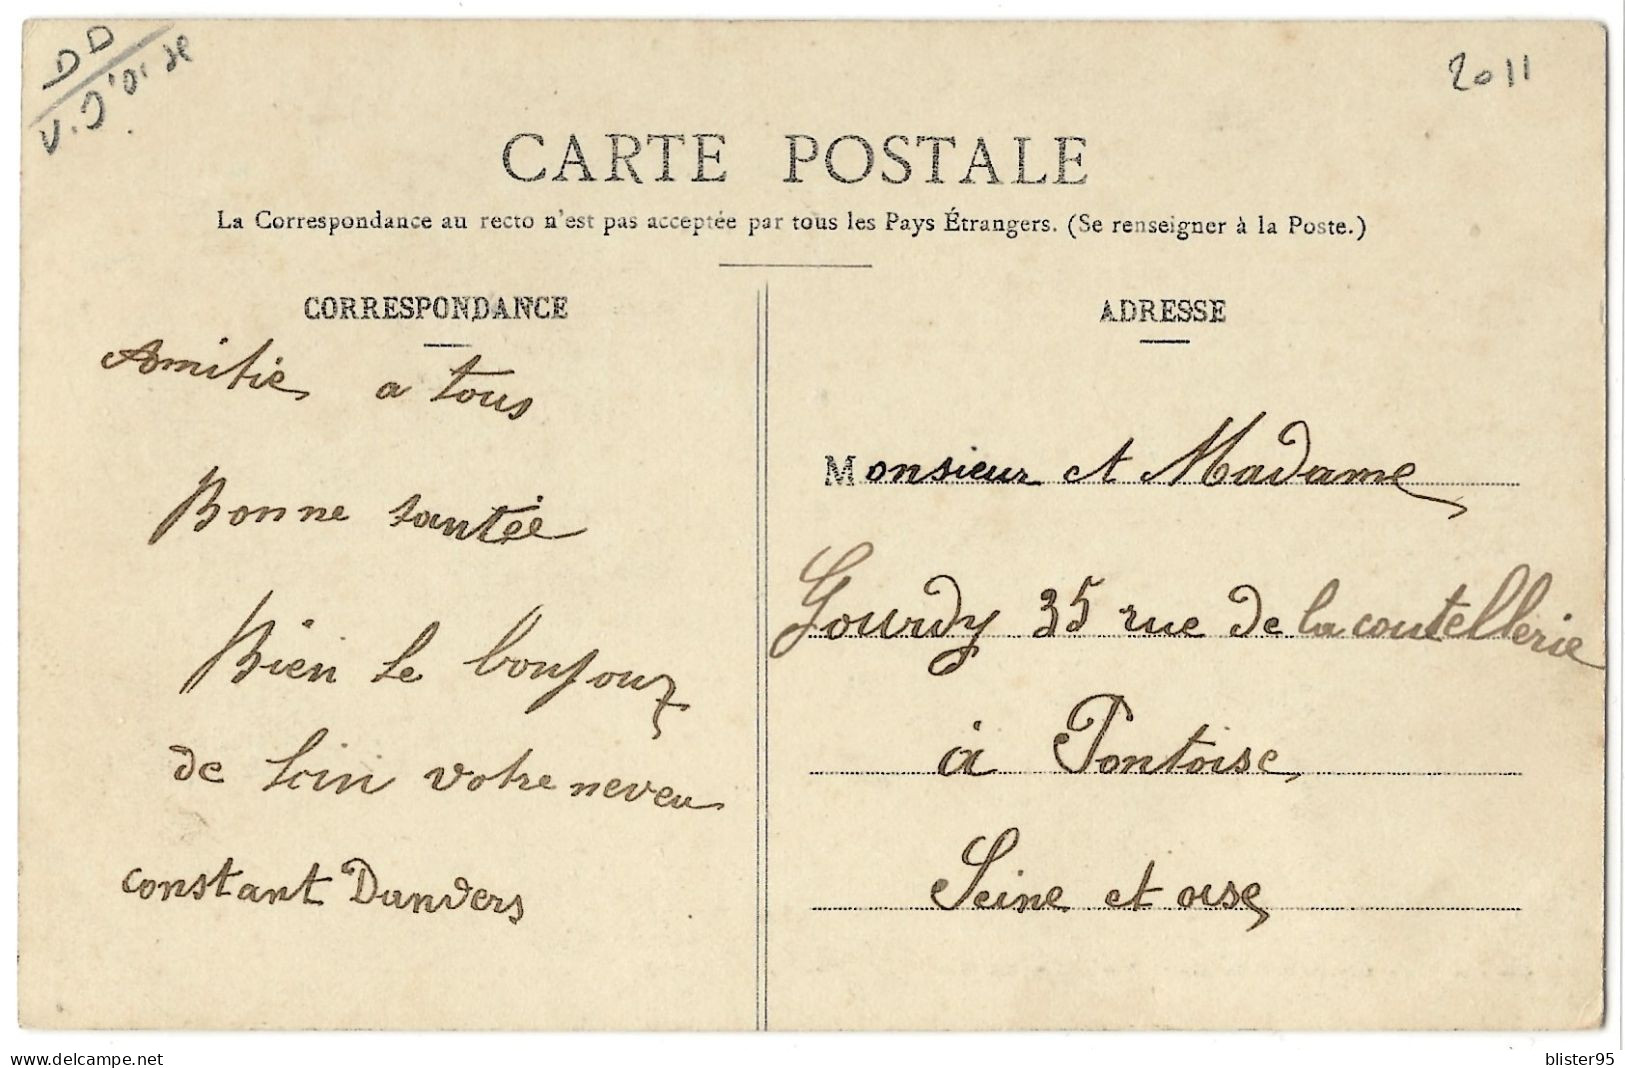 Boissy L Aillerie (95) , Les Fermes Place De L église , Envoyée En 1900/1910 - Chars